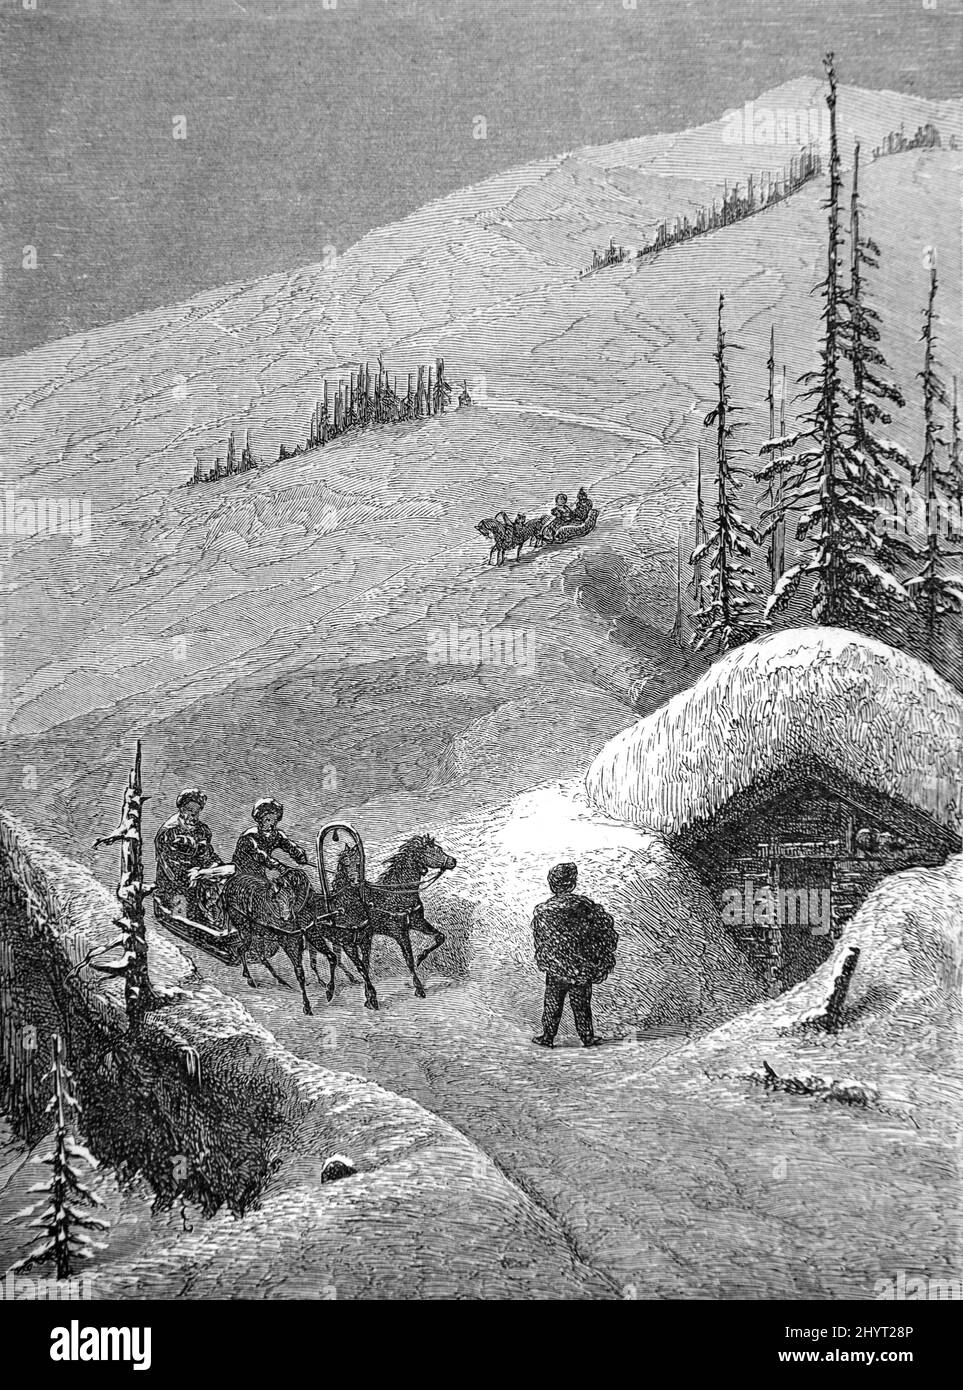 Pferdeschlitten überqueren den Surami Pass im Winter und den Gipfel der Likhi Range oder die Surami Bergkette, Teil des Kaukasus-Gebirges, in Georgien. Vintage Illustration oder Gravur 1860. Stockfoto